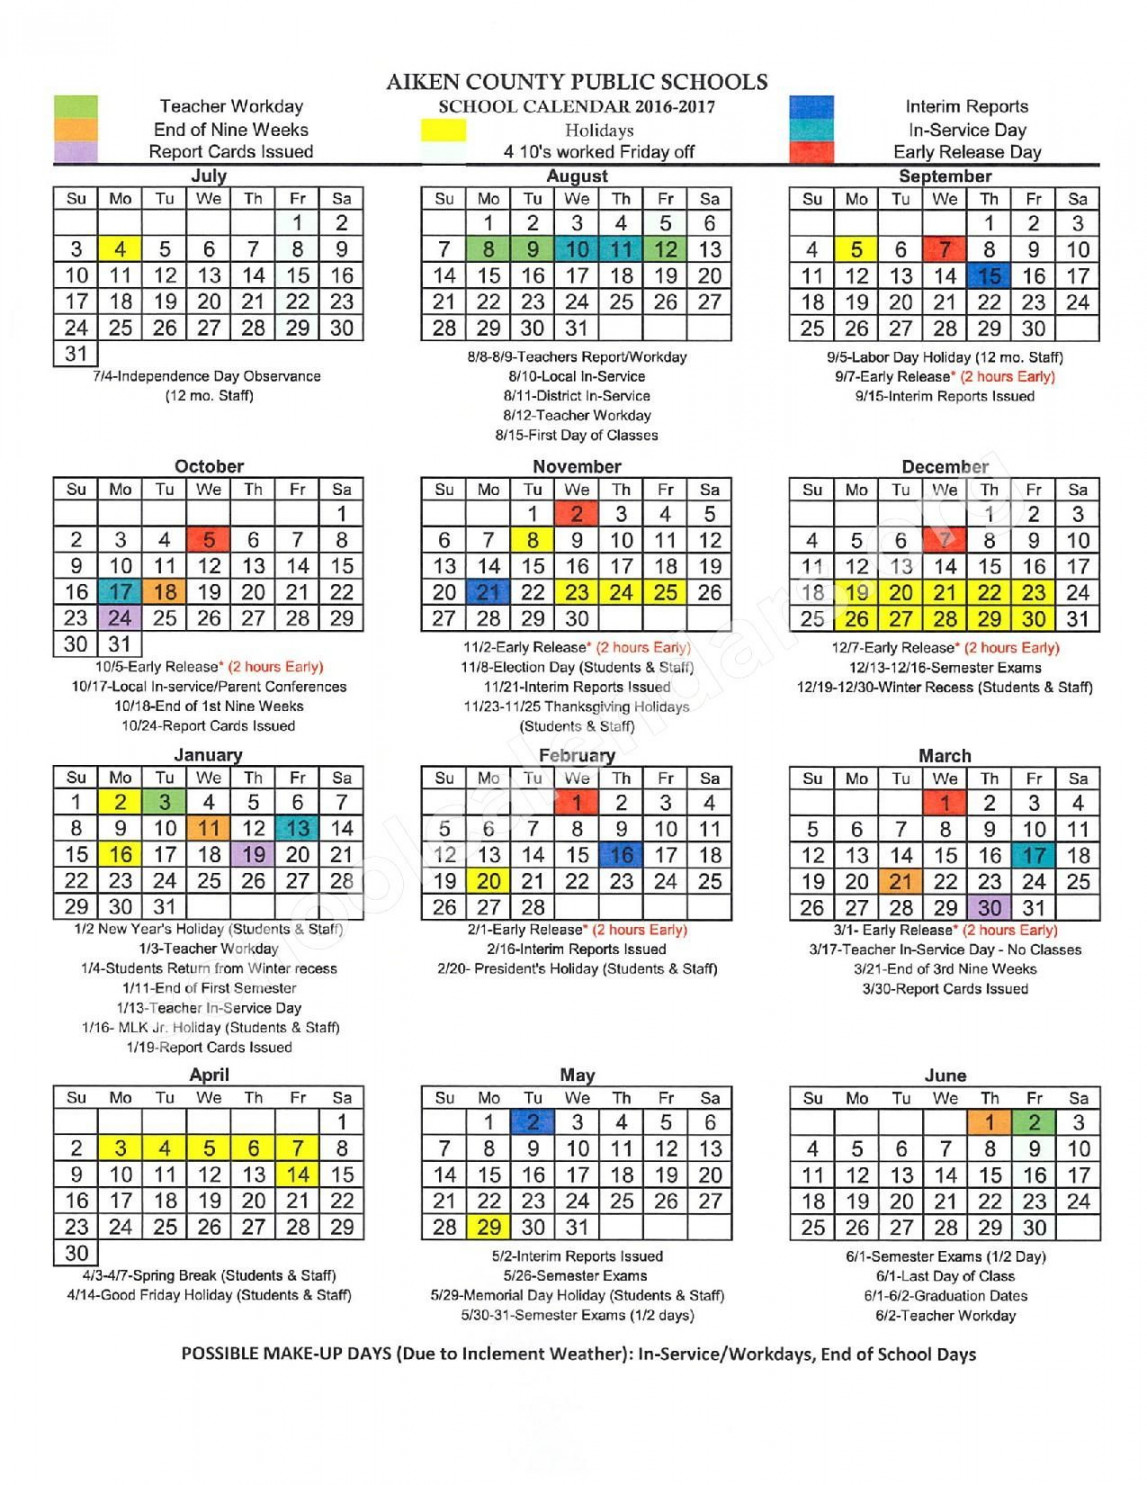 Aiken County School Calendar  School calendar, County schools